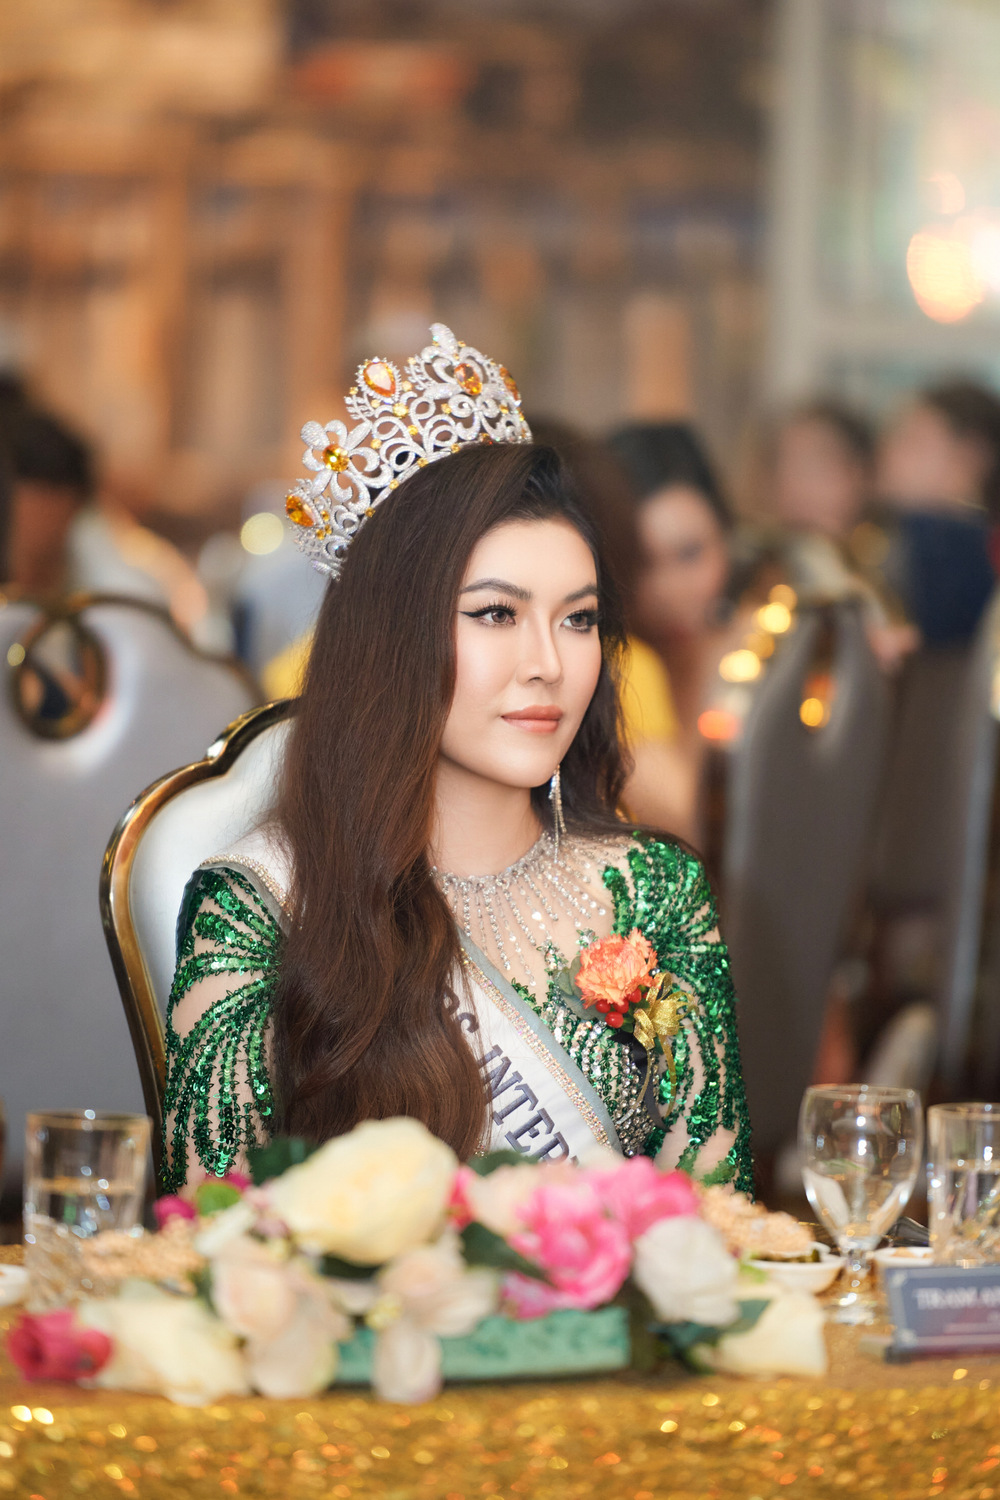 Hoa hậu Trần Hà Trâm Anh chấm thi cuộc thi quốc tế, bật khóc khi trao vương miện - Ảnh 3.